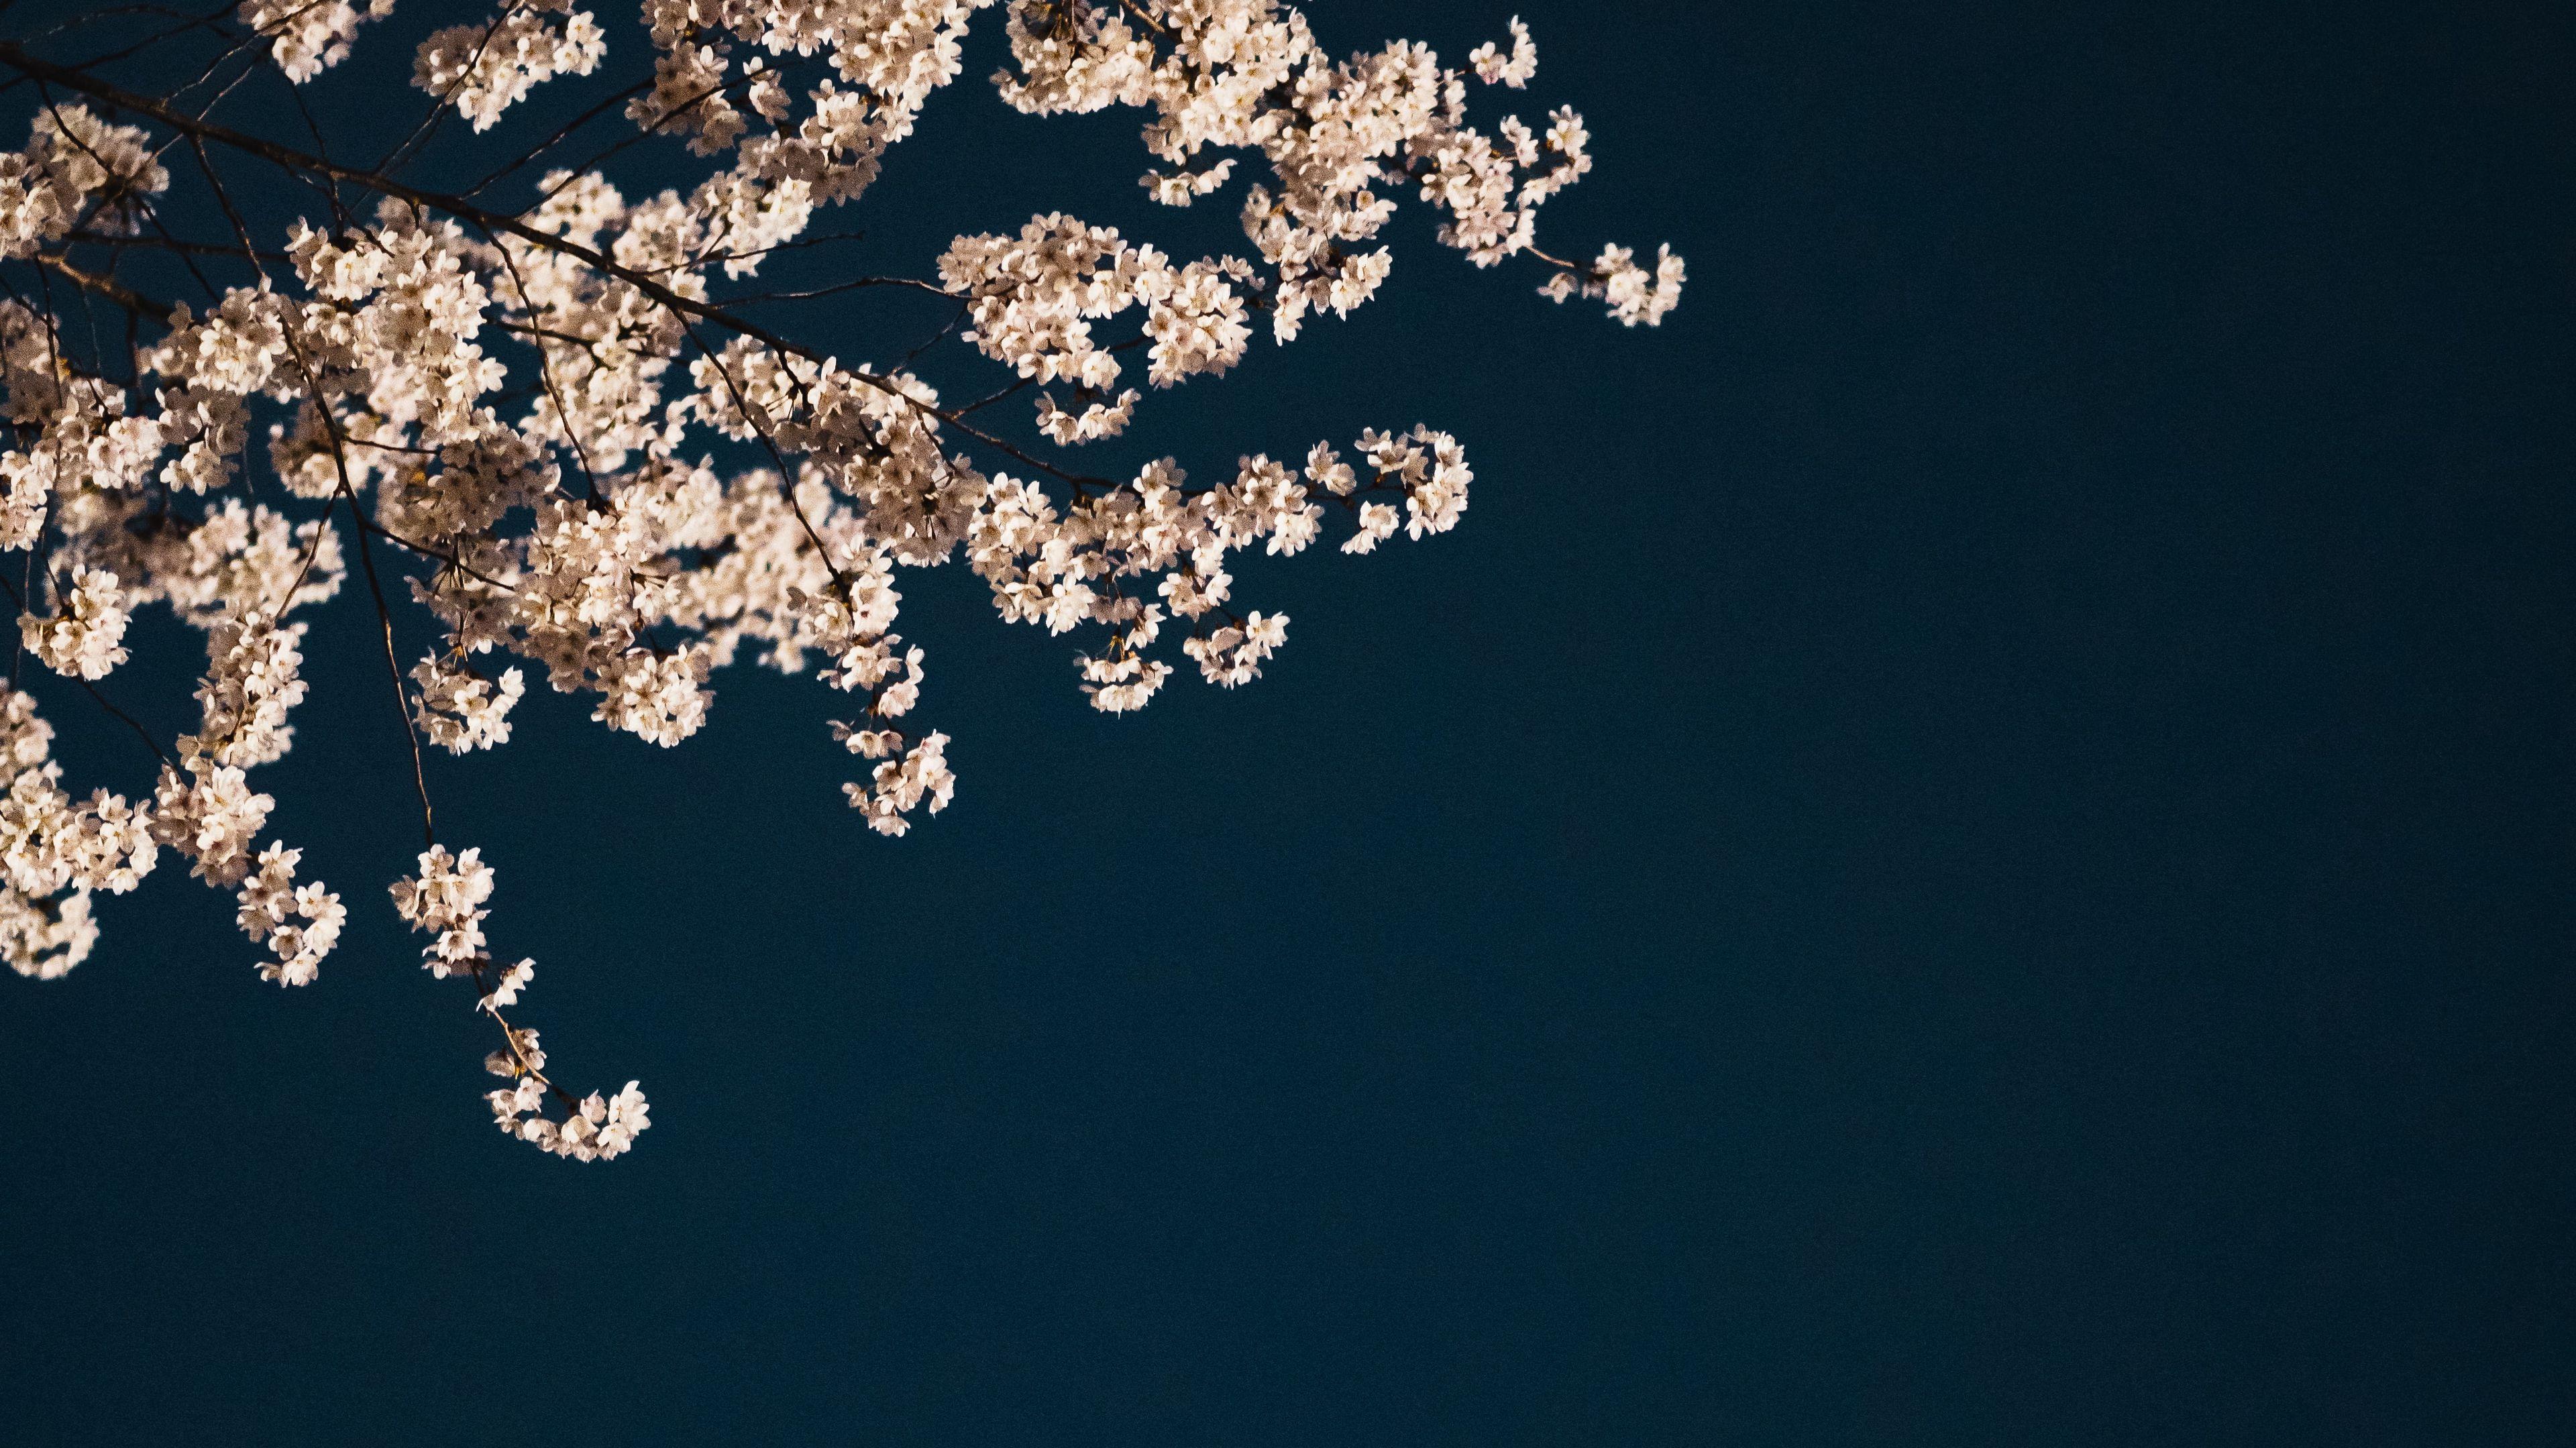 Download wallpaper 3840x2160 sakura branches flowers minimalism